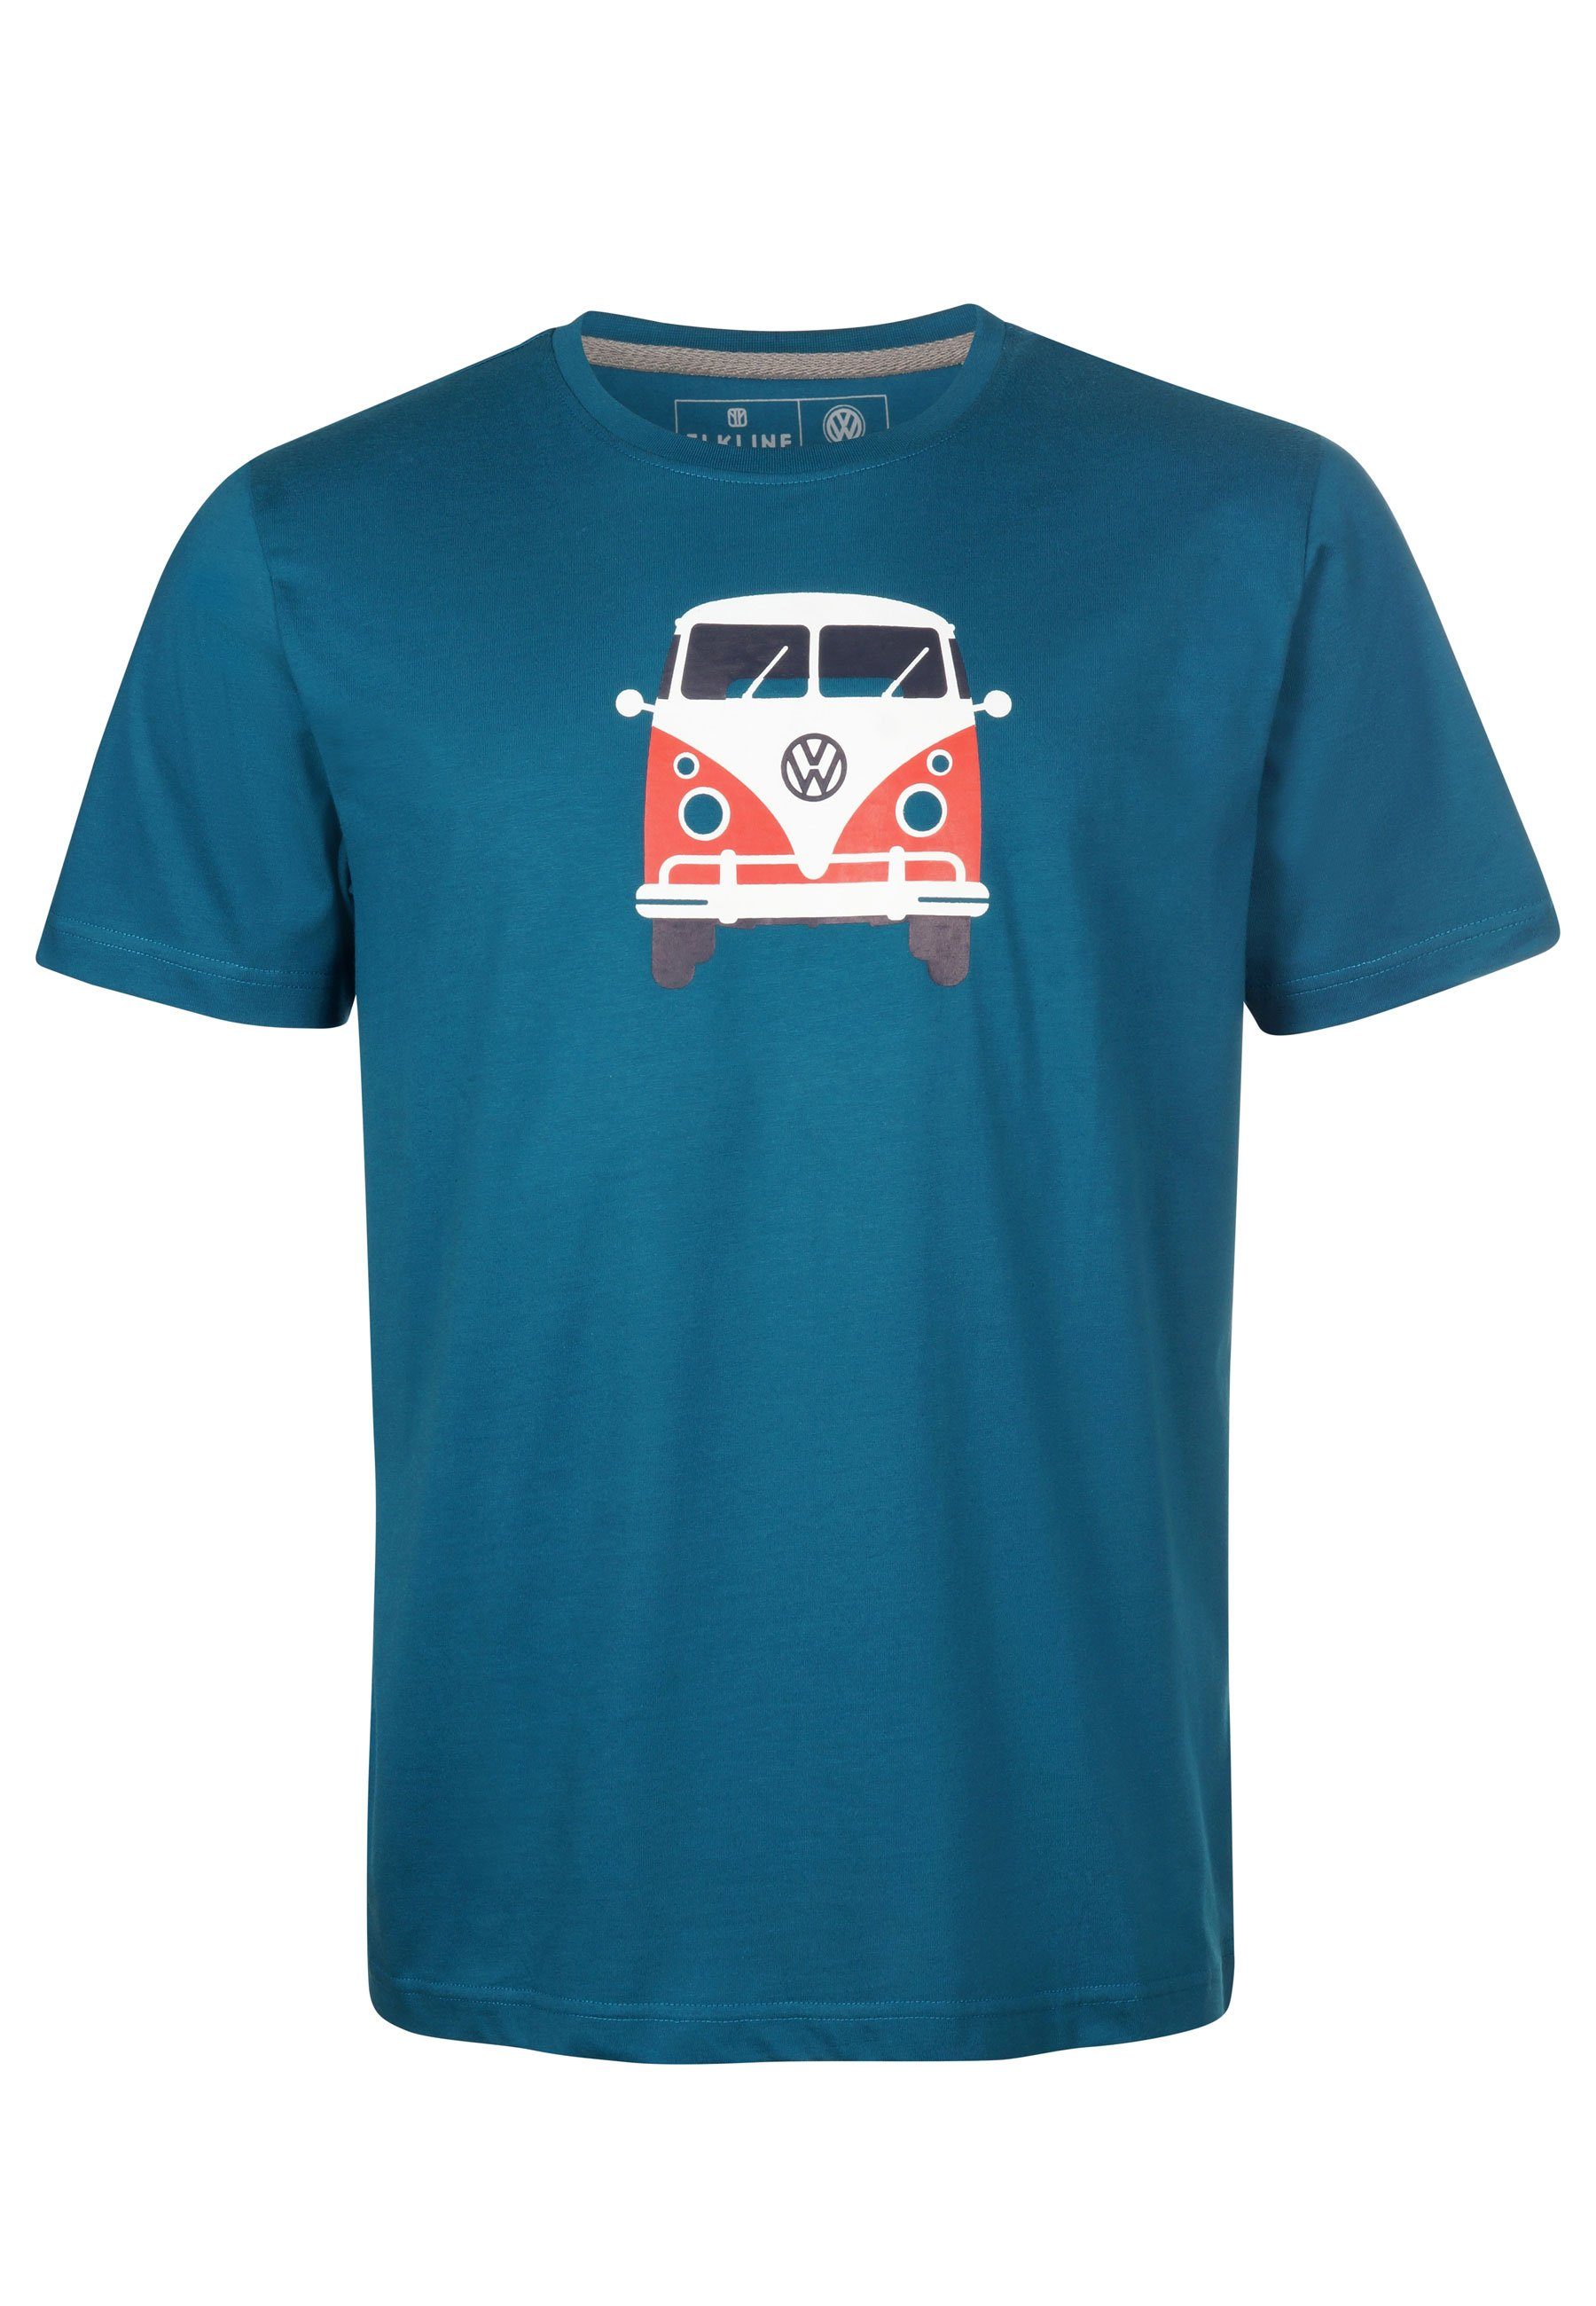 Brust Bulli coral blue Print lizenzierter Rücken VW Elkline T-Shirt Methusalem